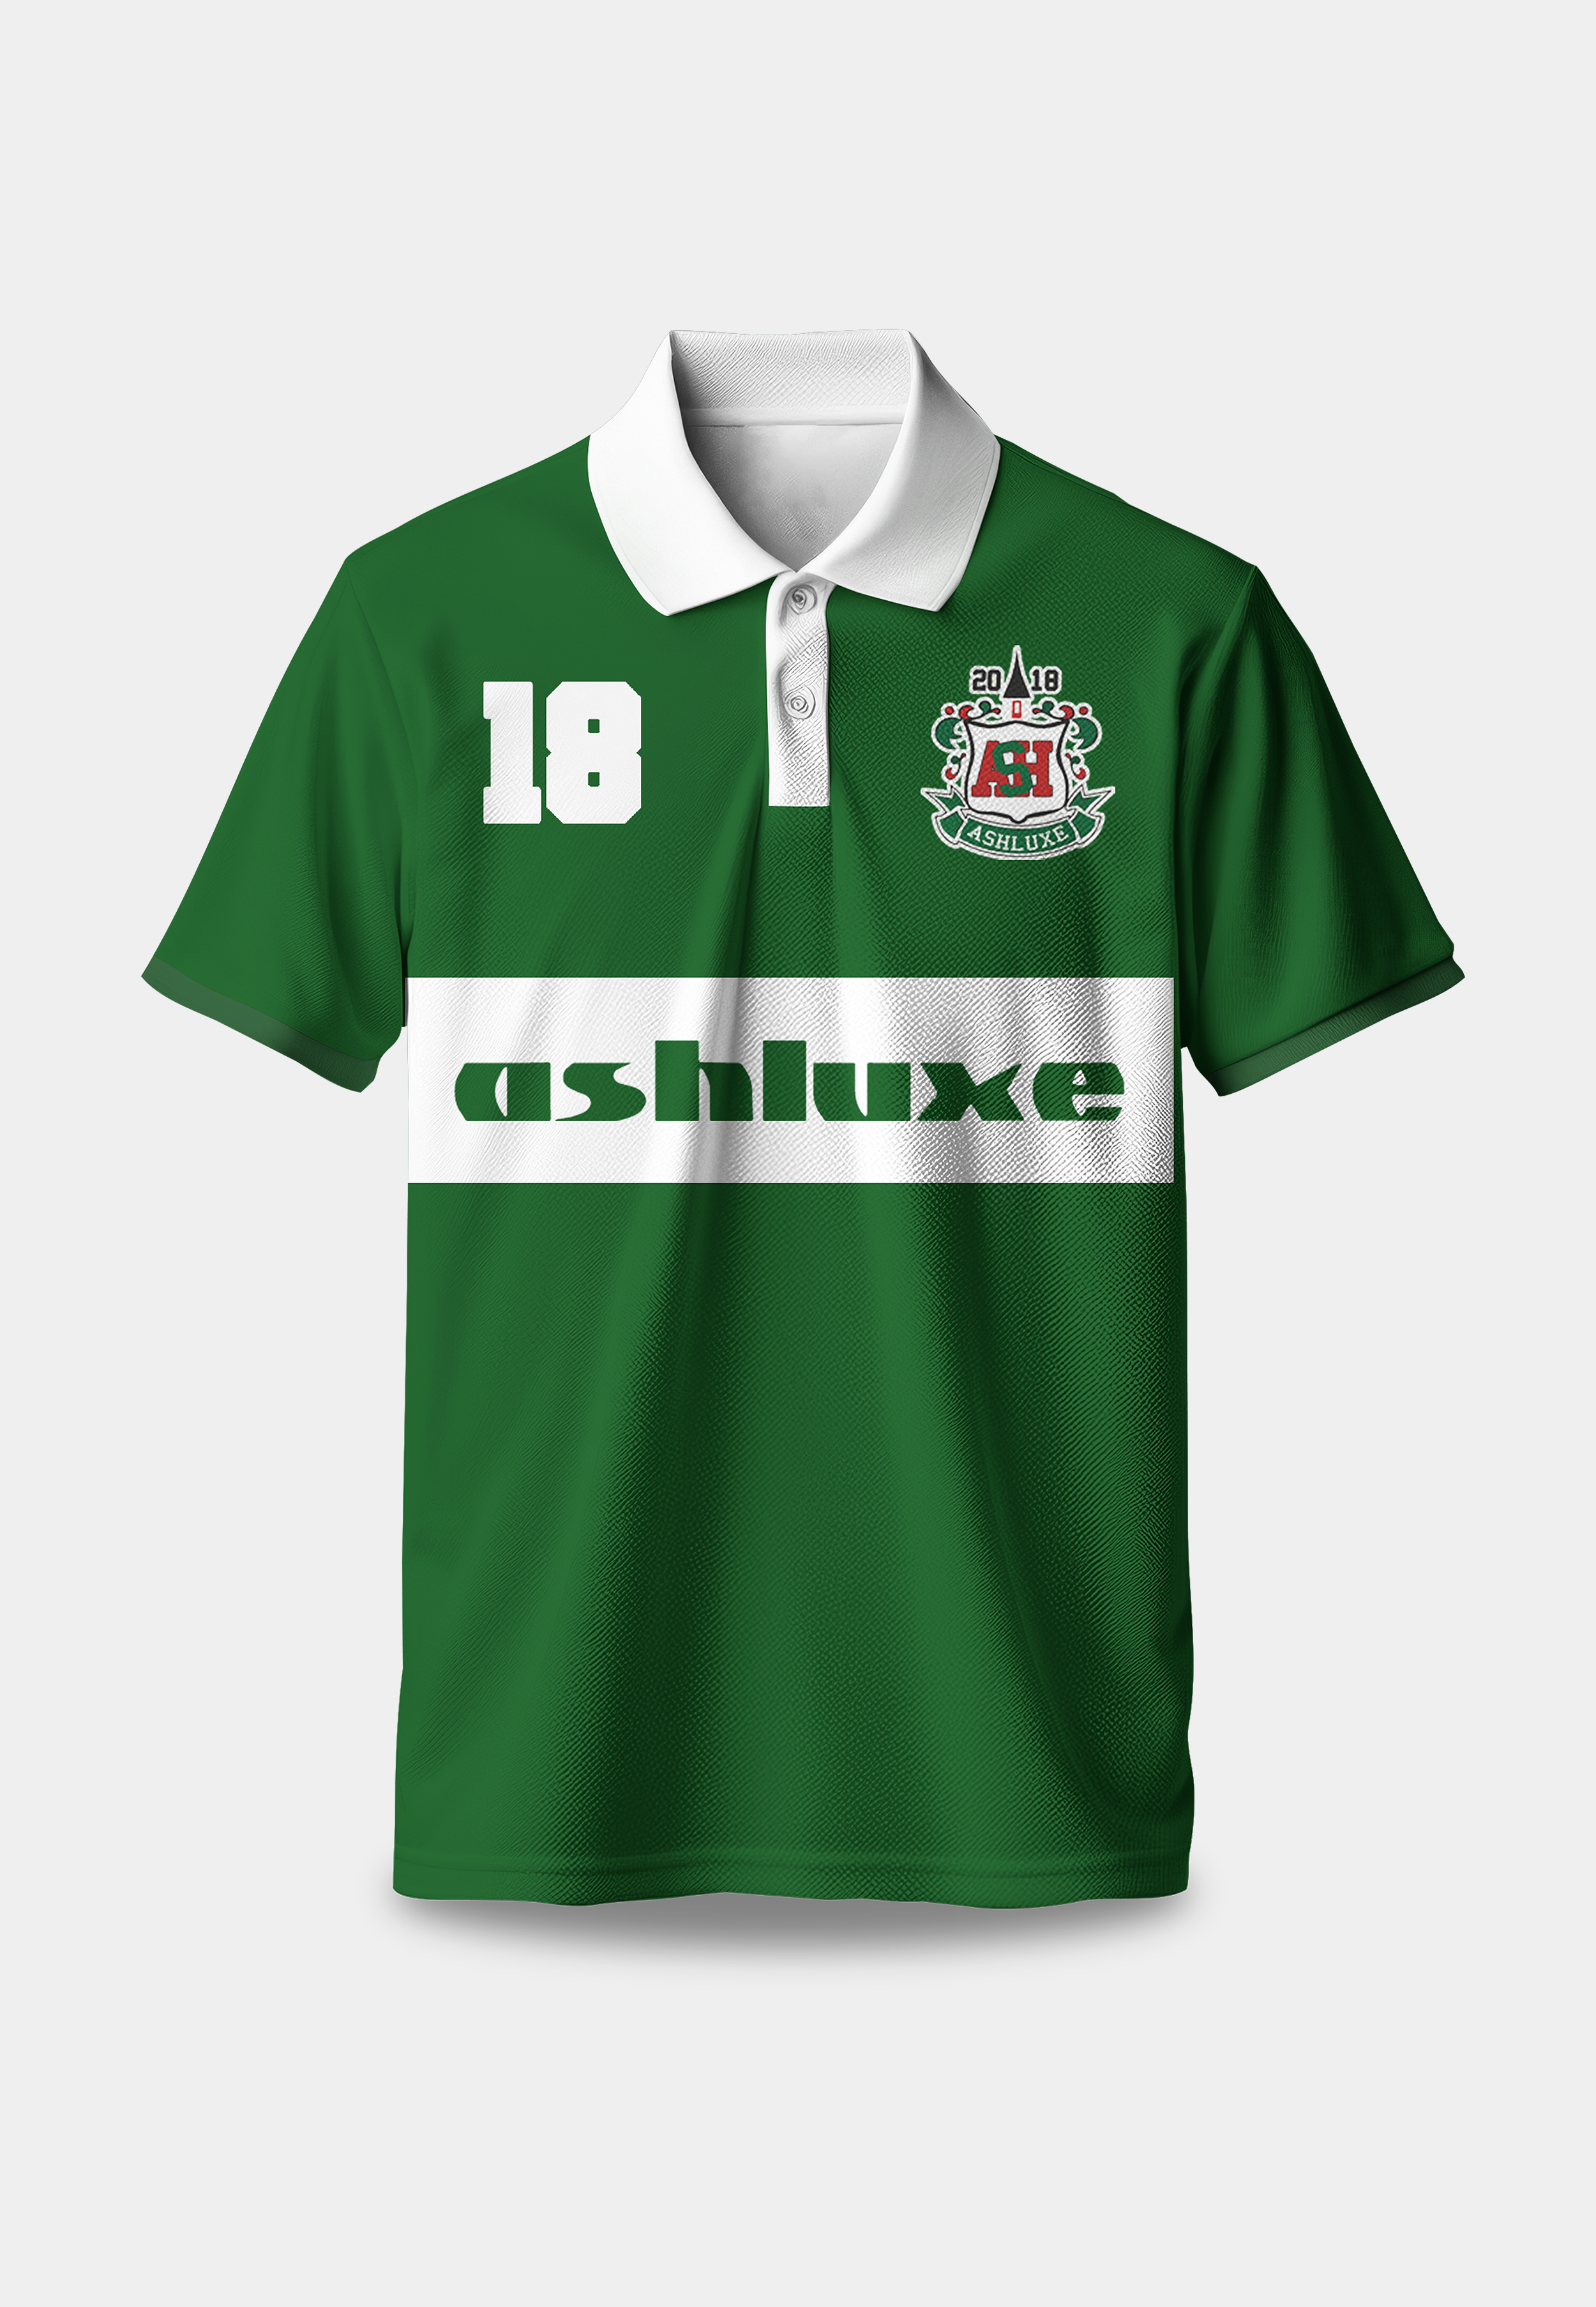 Ashluxe crest logo Polo Green